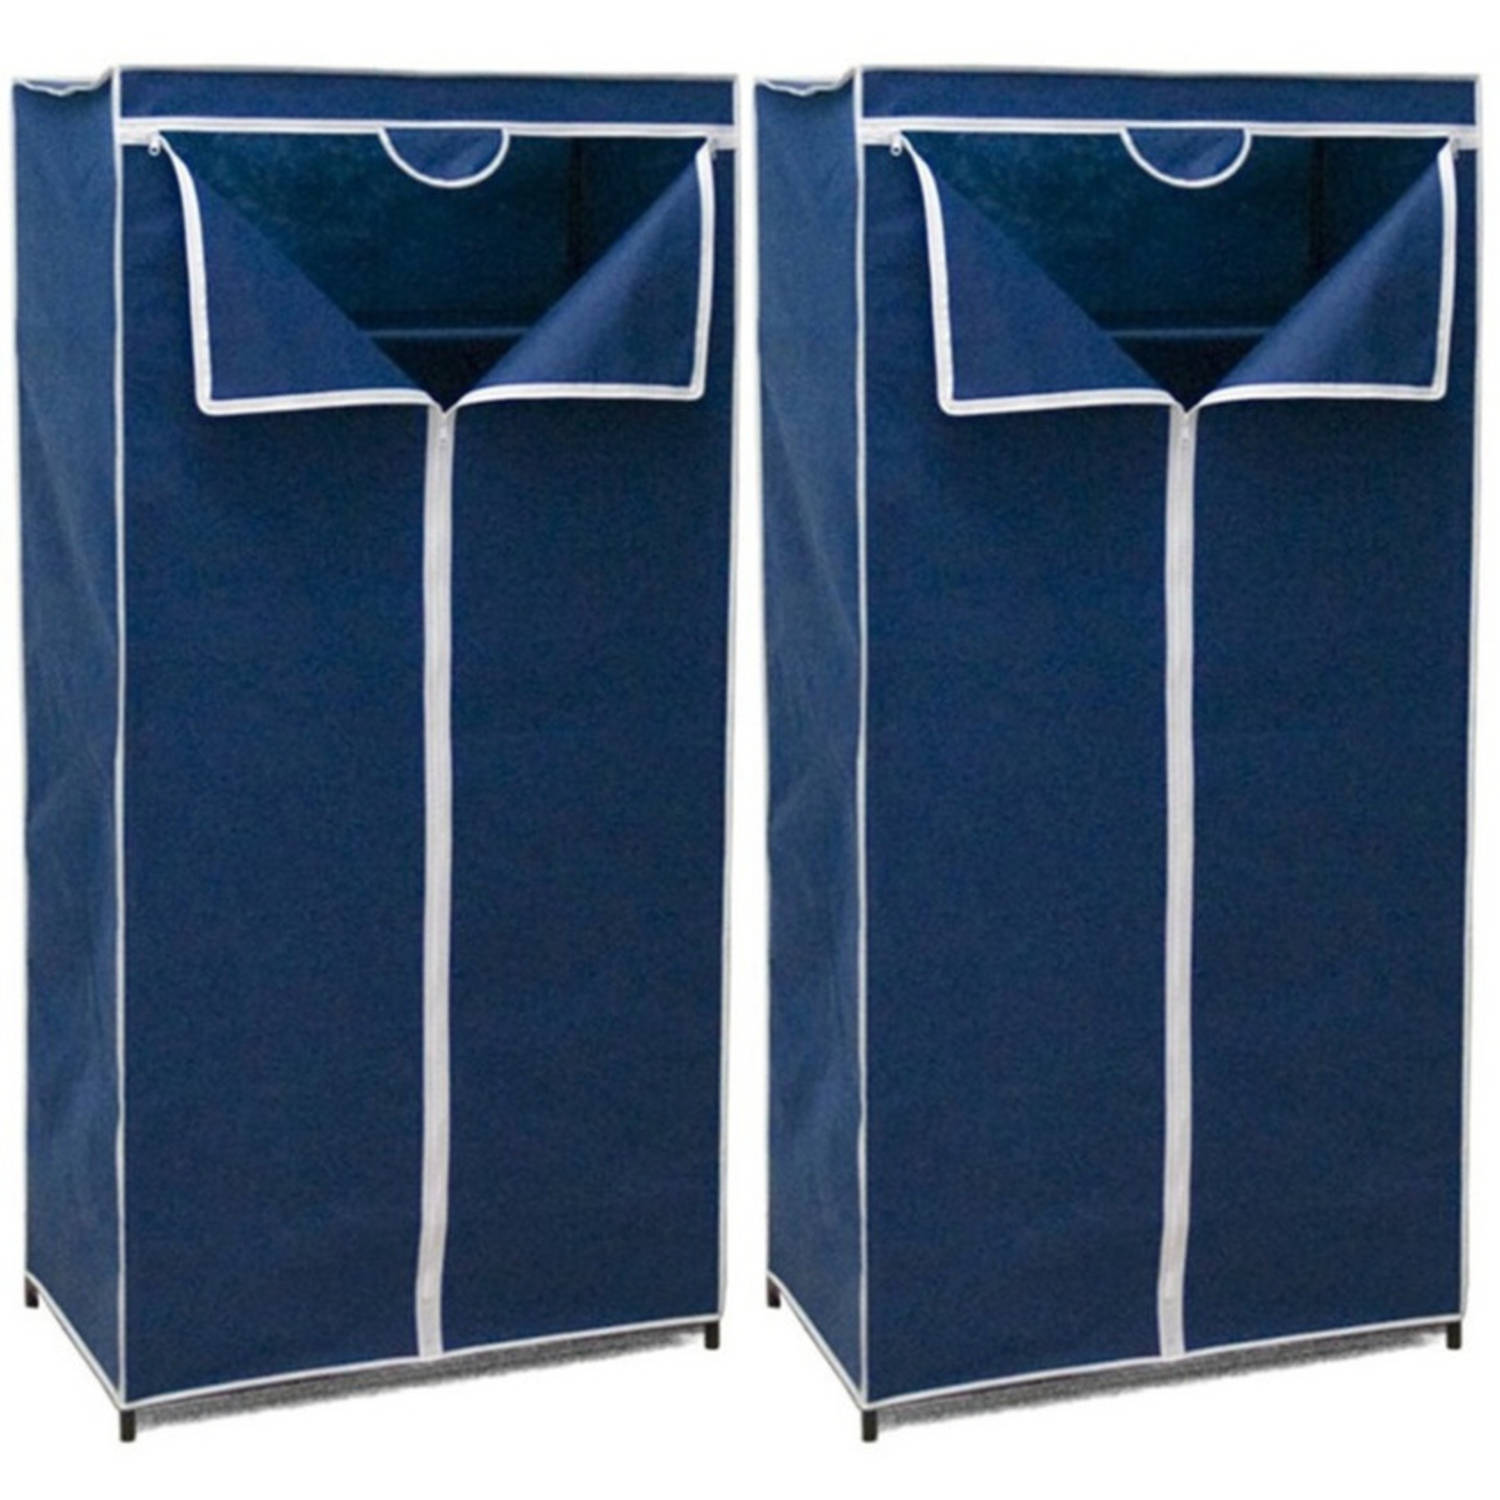 2x Stuks mobiele opvouwbare kledingkasten blauw 75 x 46 x 160 cm - Campingkledingkasten